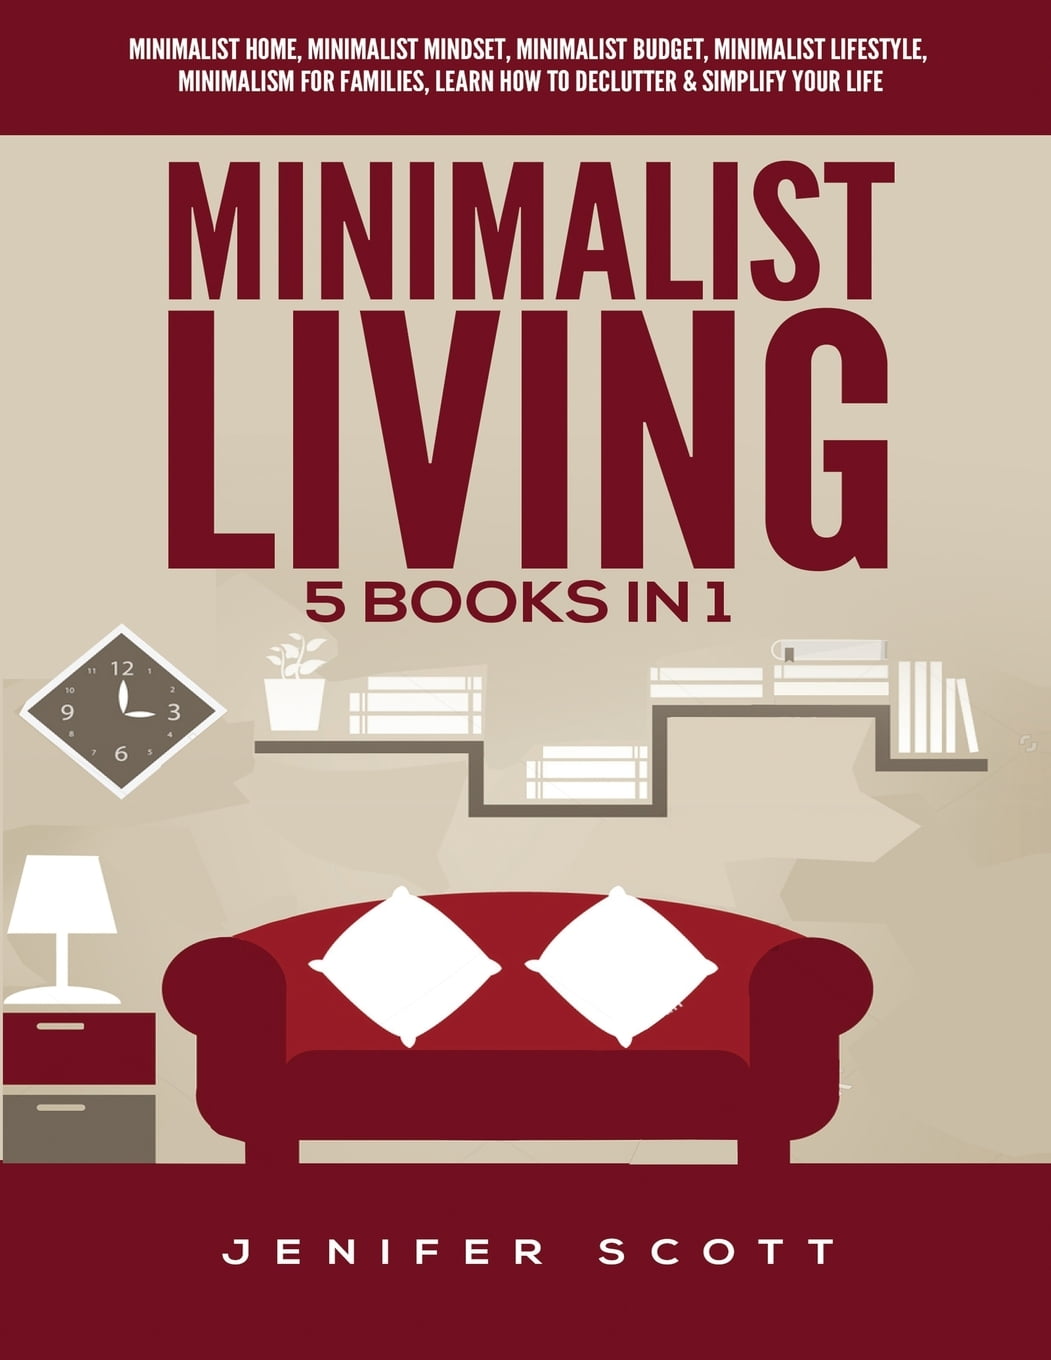 Minimalist Living 5 Books in 1 Minimalist Home, Minimalist Mindset